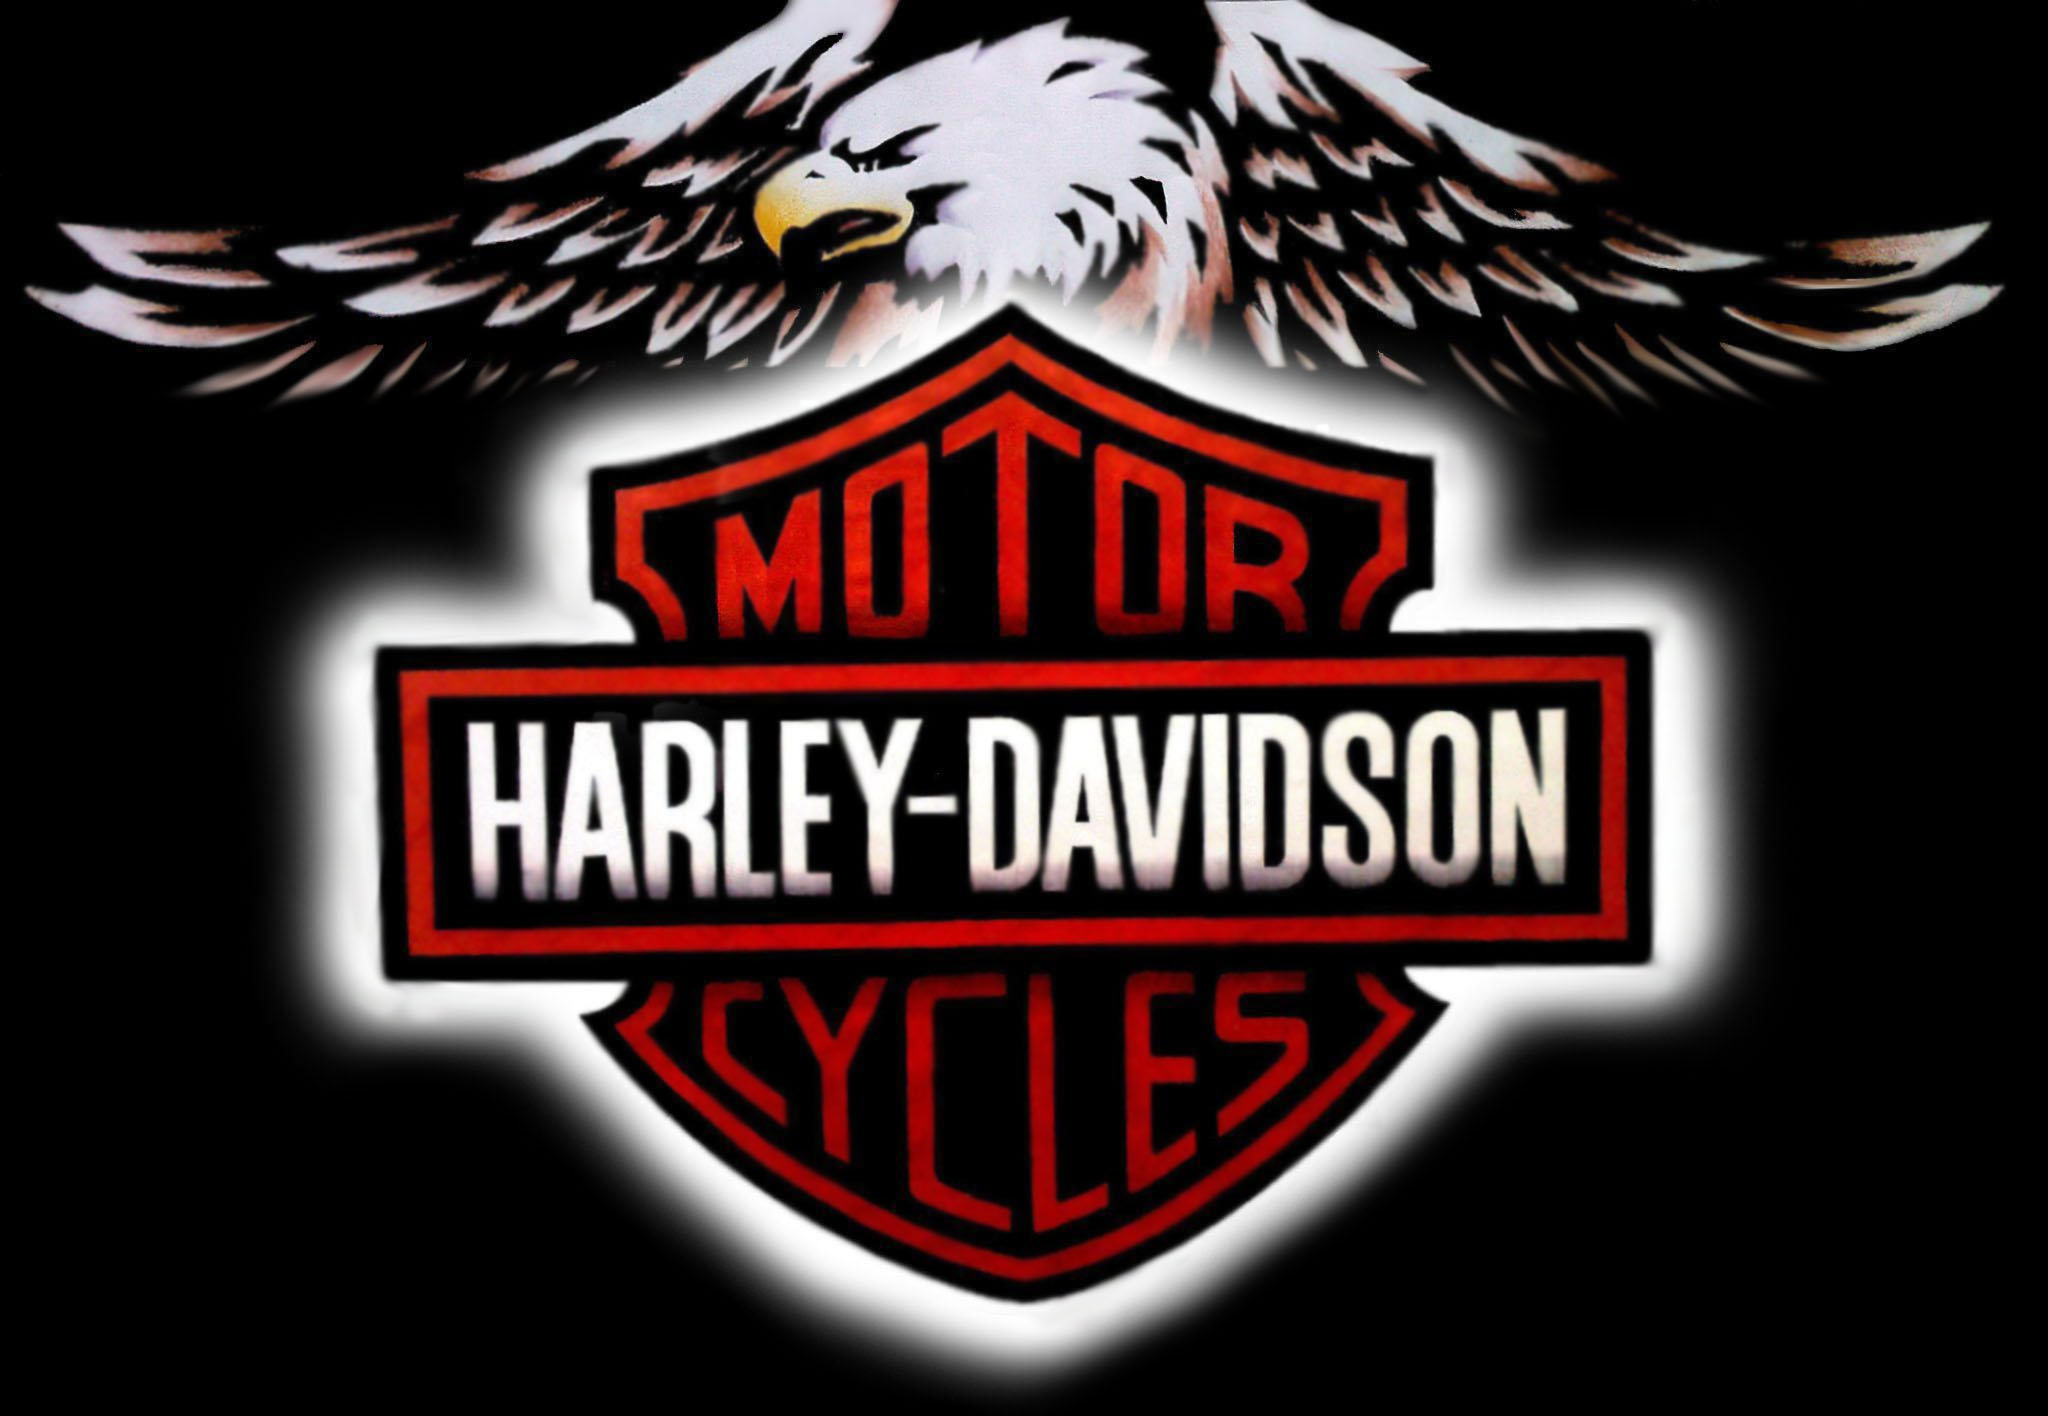  Logo Harley Davidson Motorcycles and Harley Davidson Wallpaper